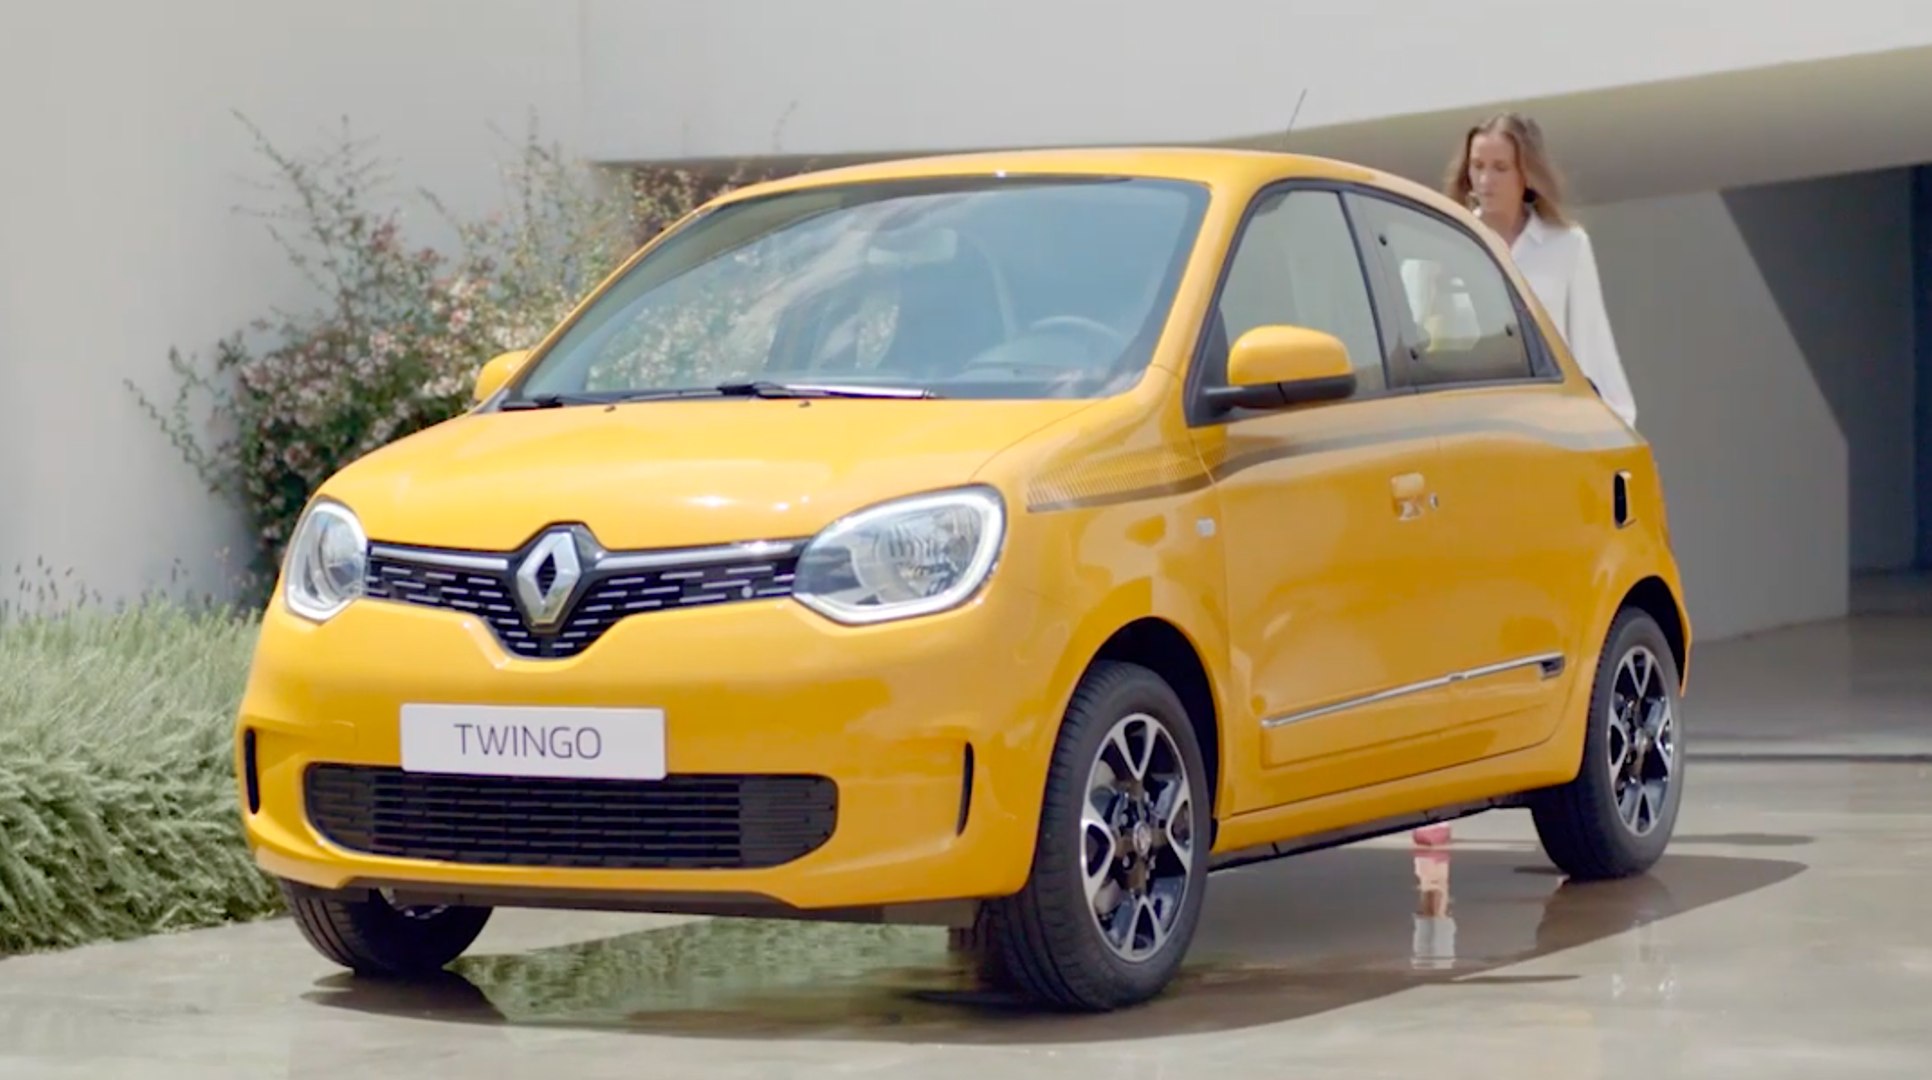 cerebro caloría Incentivo VÍDEO: Todos los accesorios para tu Renault Twingo 2019 - Vídeo Dailymotion